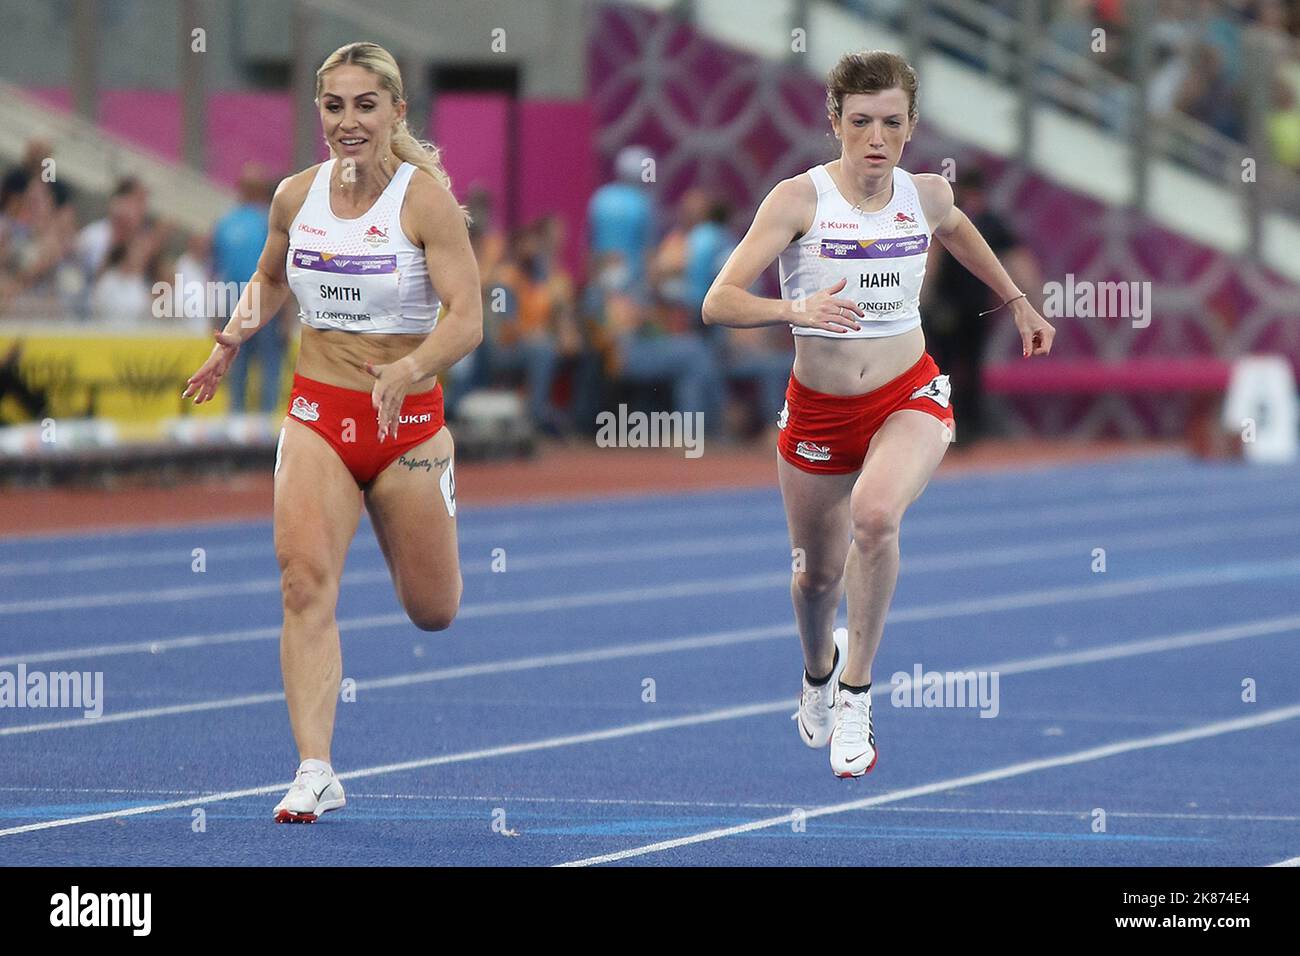 (De gauche à droite) Ali SMITH et Sophie HAHN d'Angleterre dans le Women's T37 / T38 100m aux Jeux du Commonwealth 2022 à Birmingham. Banque D'Images